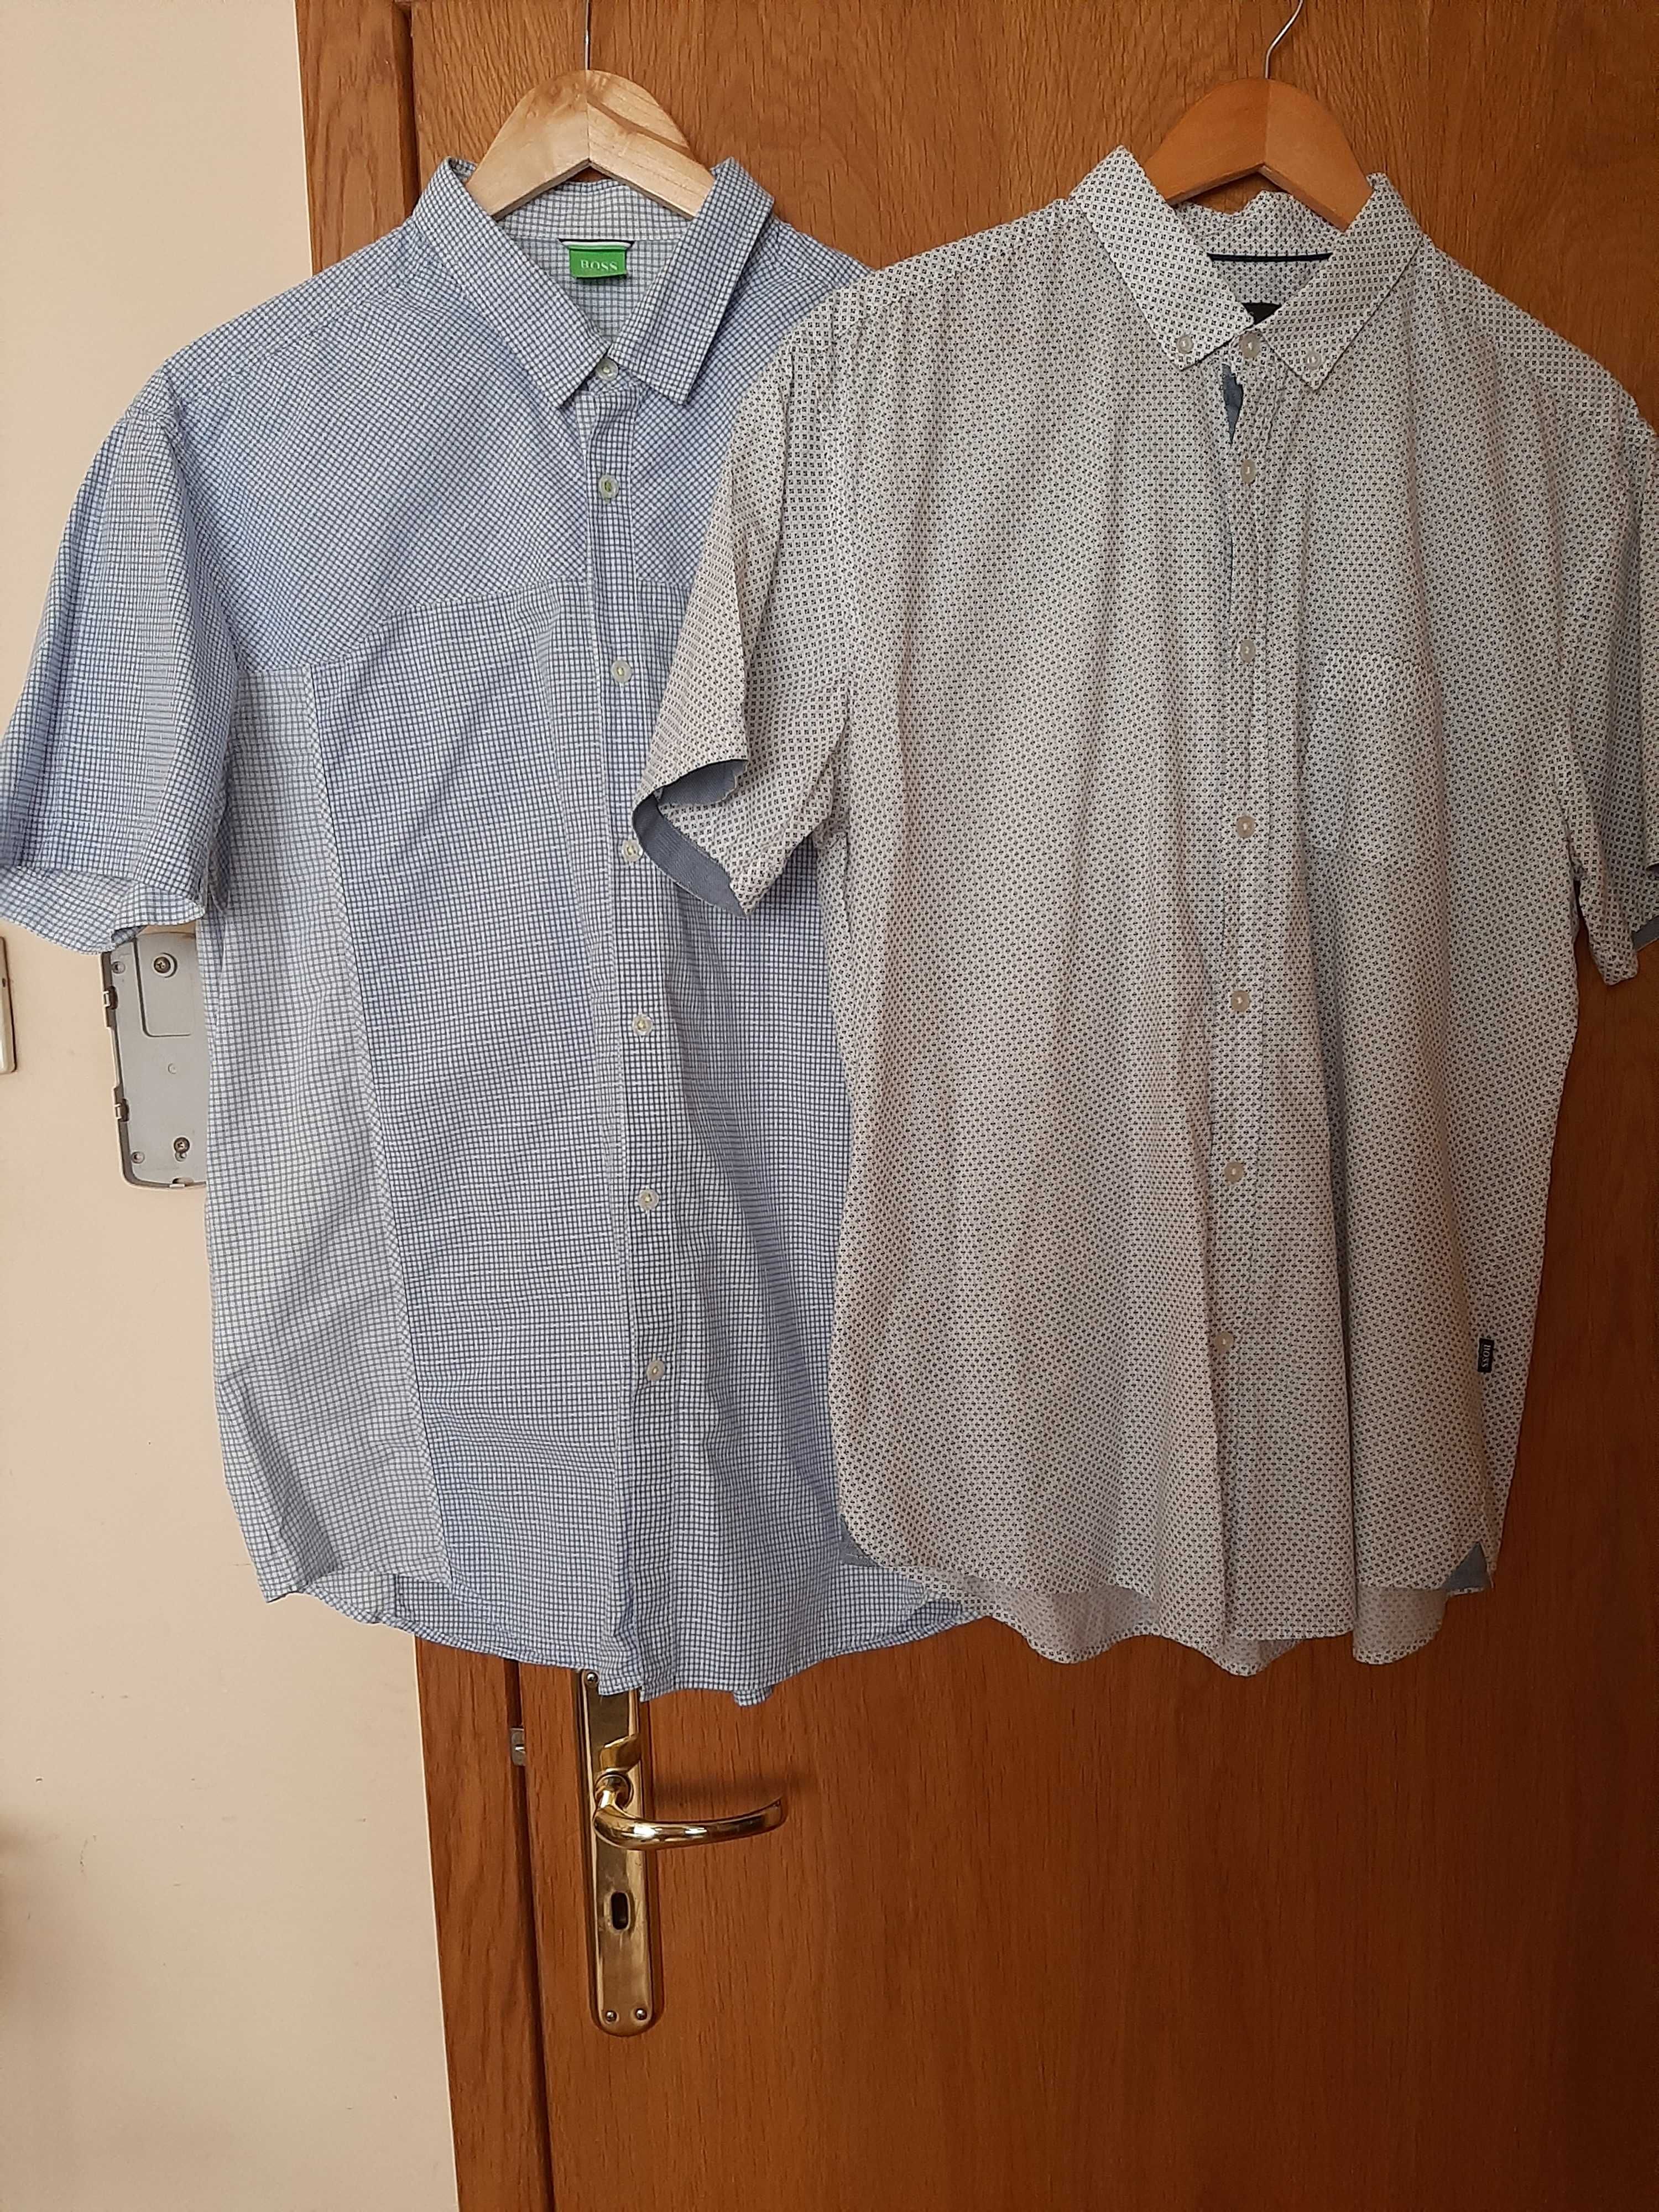 Мъжки ризи HUGO BOSS с къс ръкав, размер XXL.Като нови!Оригинални!